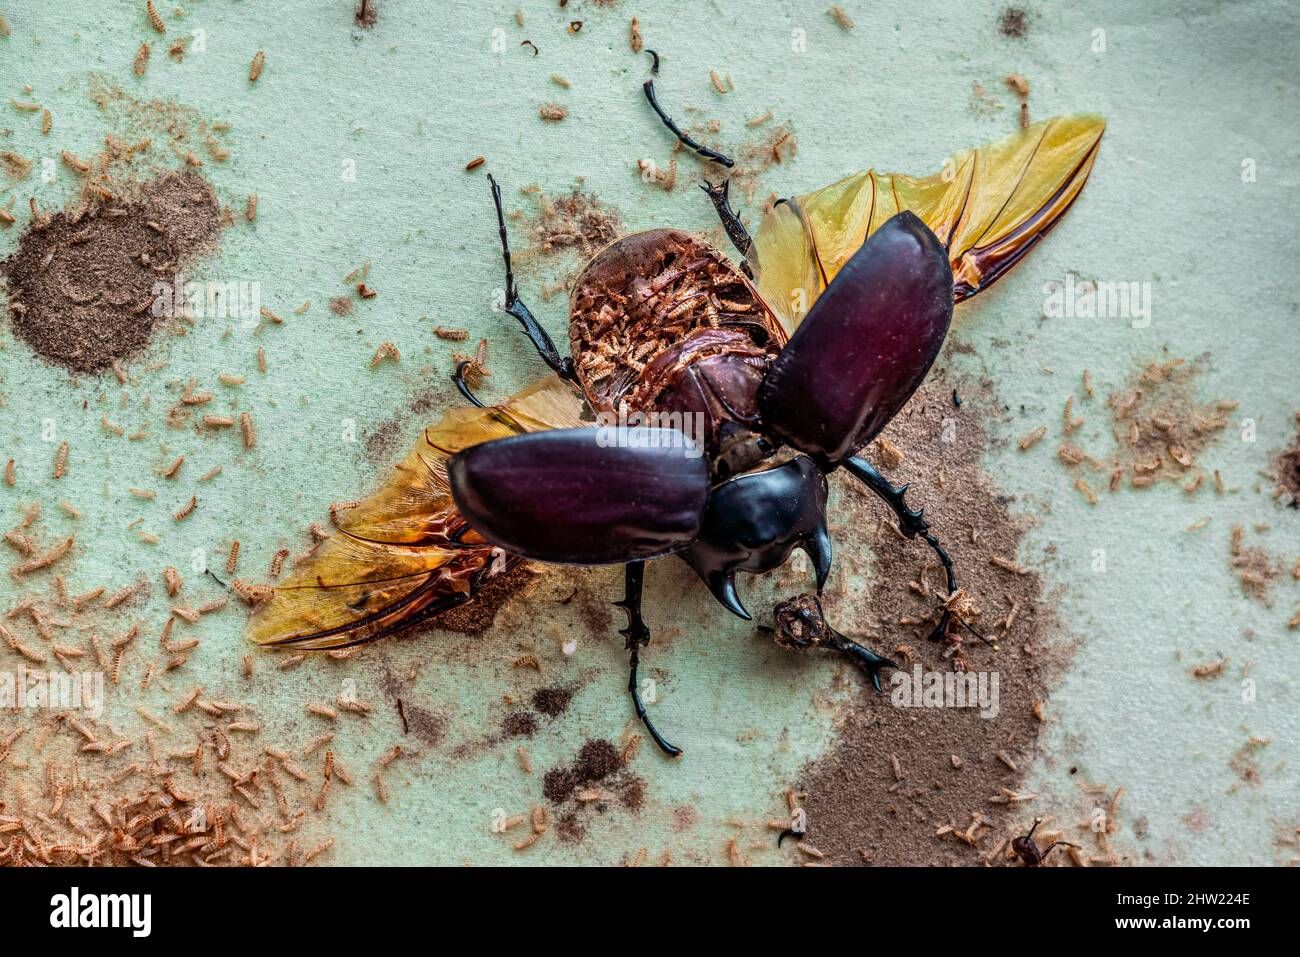 Schöner männlicher Actaeon-Käfer (Megasoma actaeon), der von tausenden von Teppichkäfer-Larven (Anthrenus verbasci) zerstört wurde. Voll gefressen Bauch kann gesehen werden Stockfoto